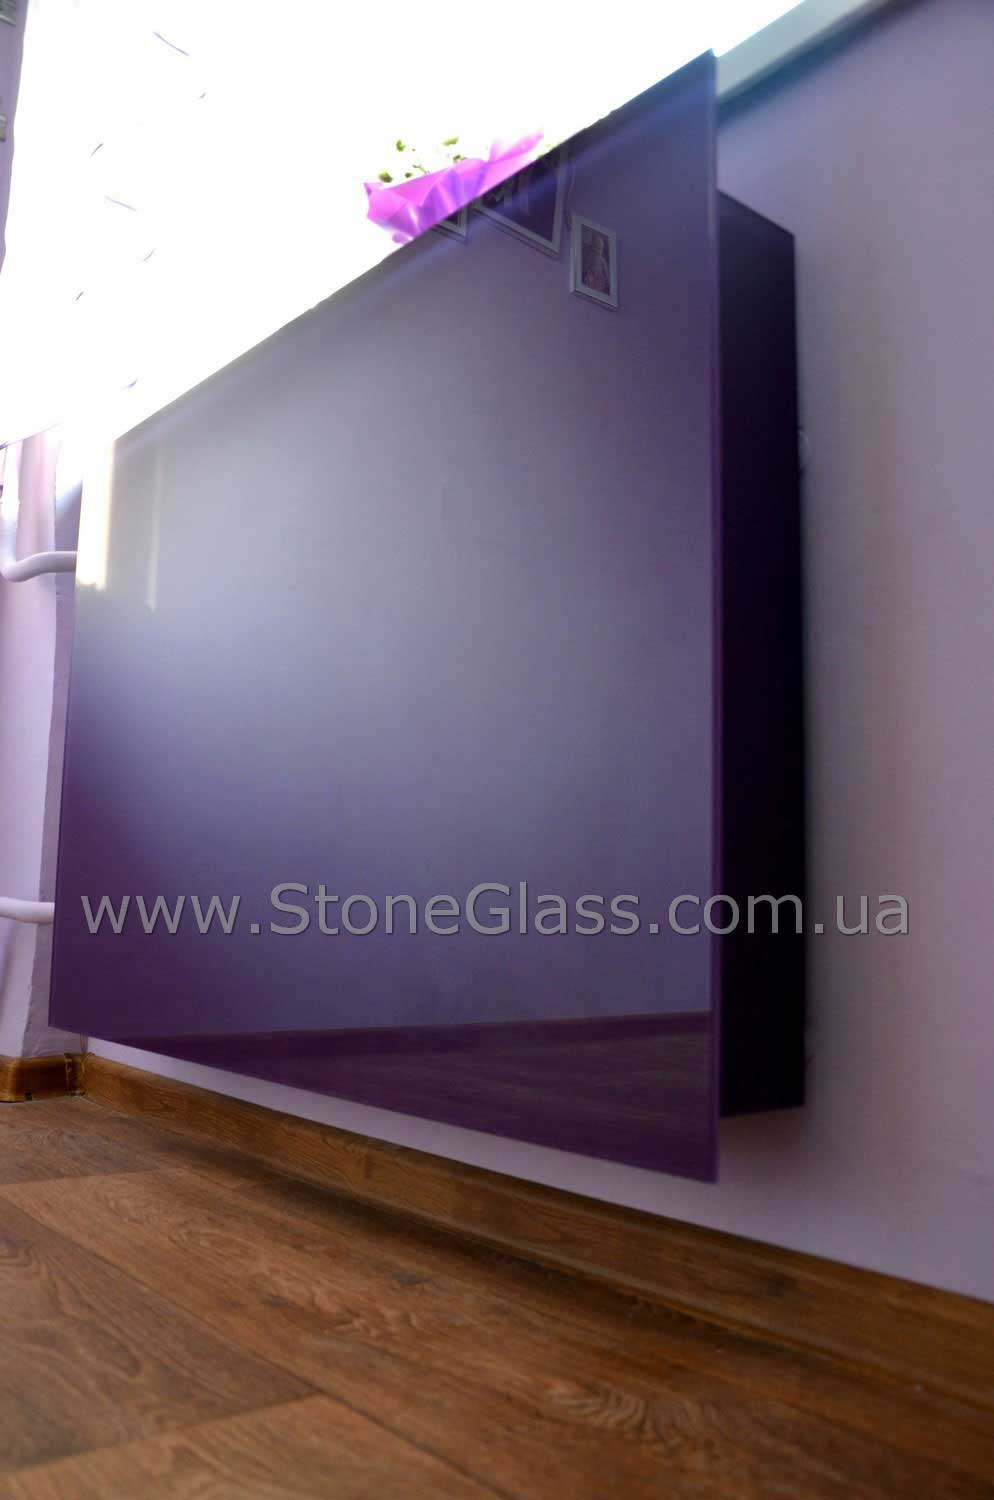 Фиолетовый экран с глянцевой поверхностью